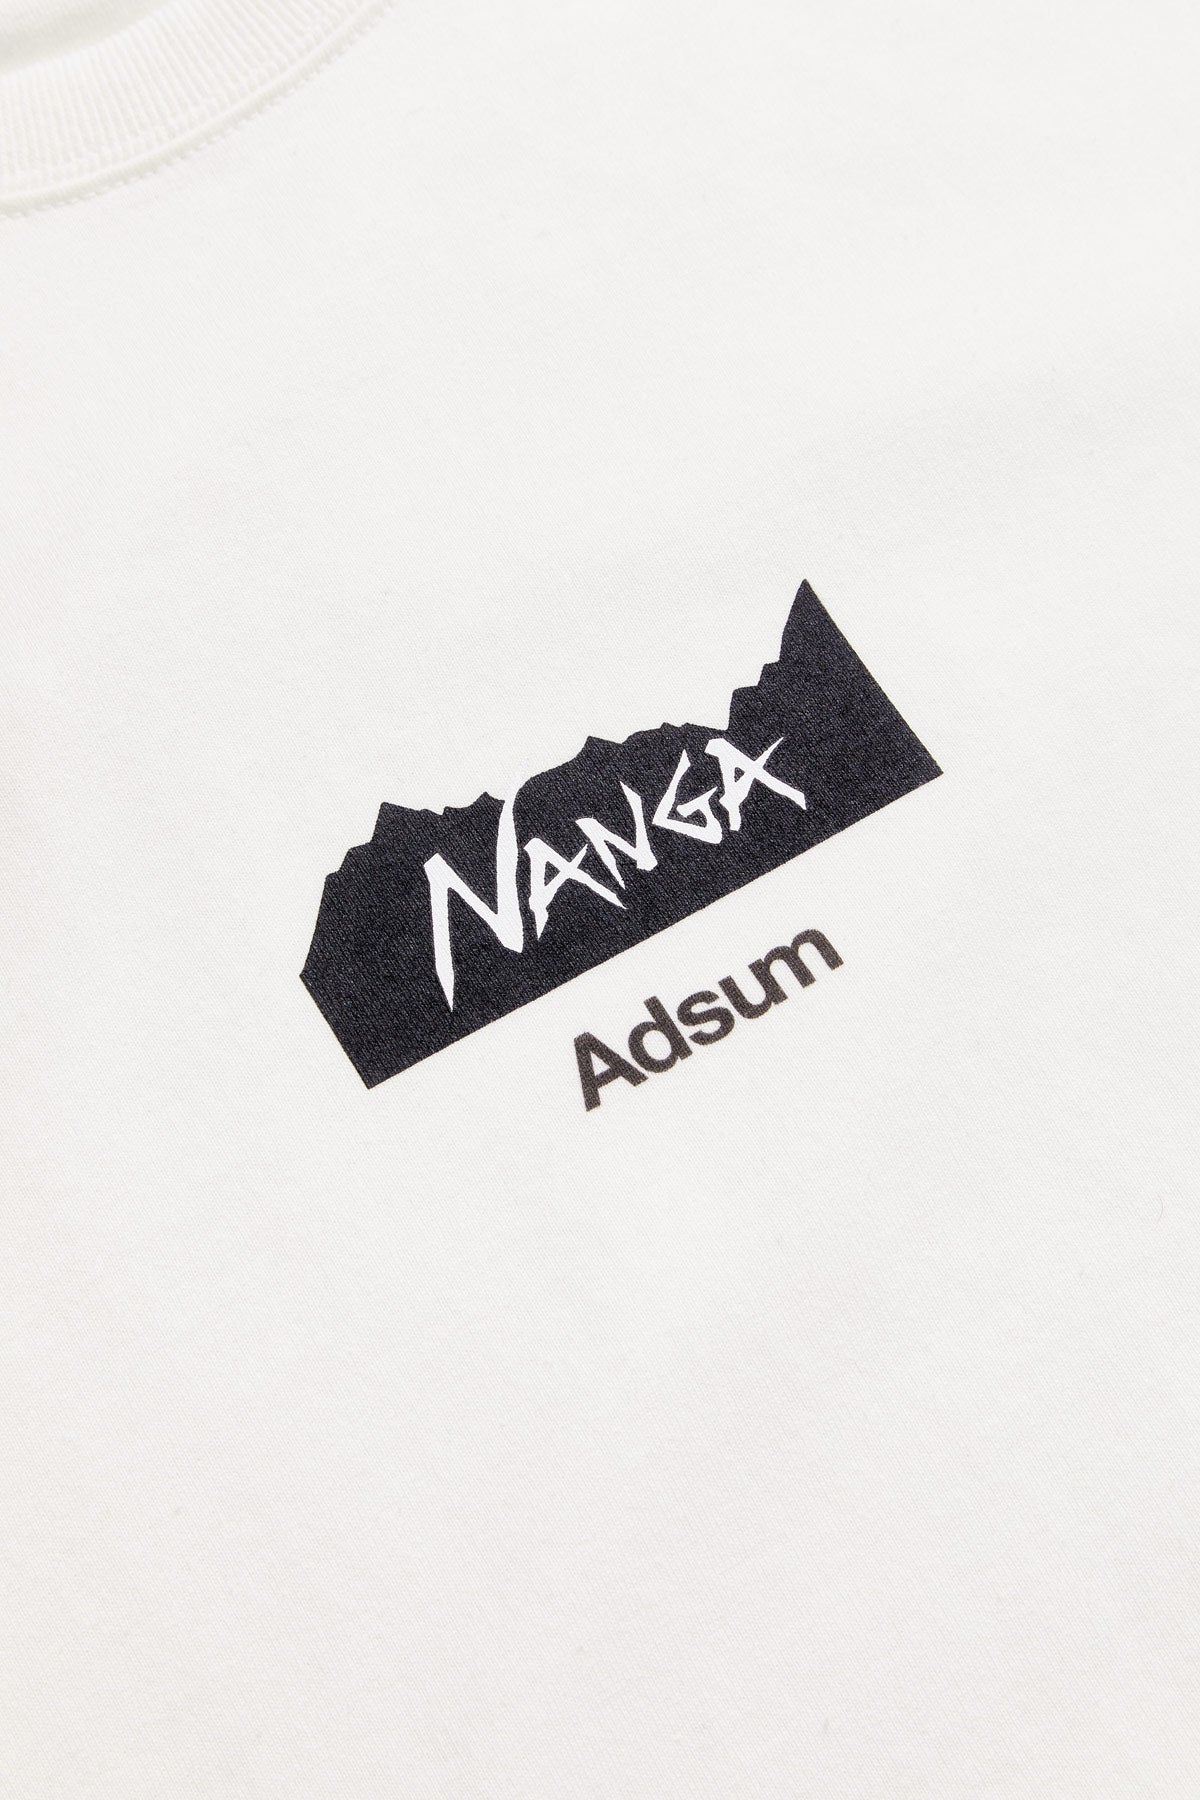 Adsum + Nanga Logo Tee